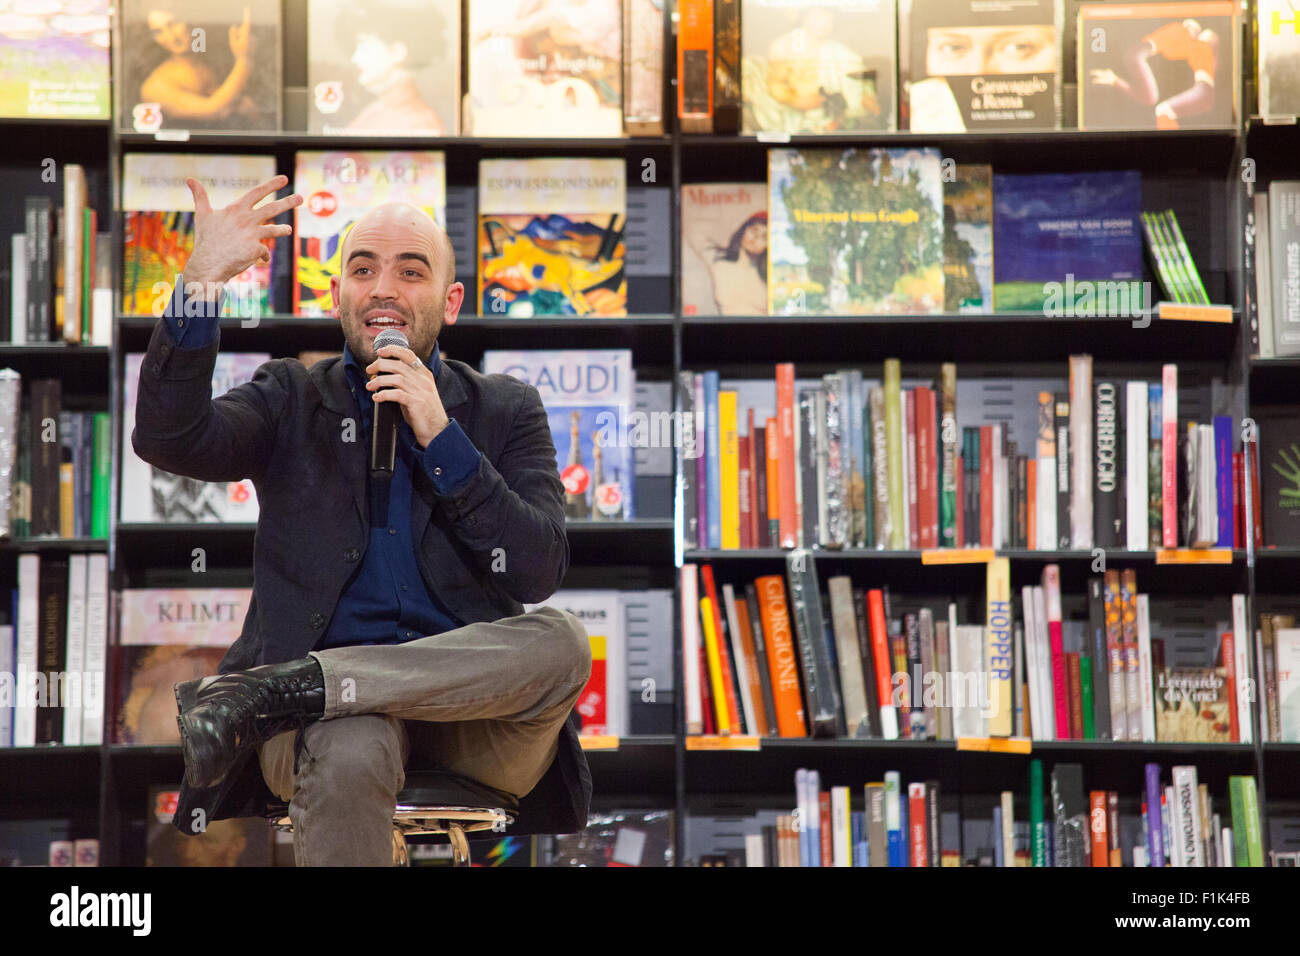 Rom, Italien, 15. März 2011. Roberto Saviano, Schriftsteller und Autor mehrerer Bücher, Lunchs sein Buch "Vieni via con me" bei Feltrinelli Bibliothek. Stockfoto